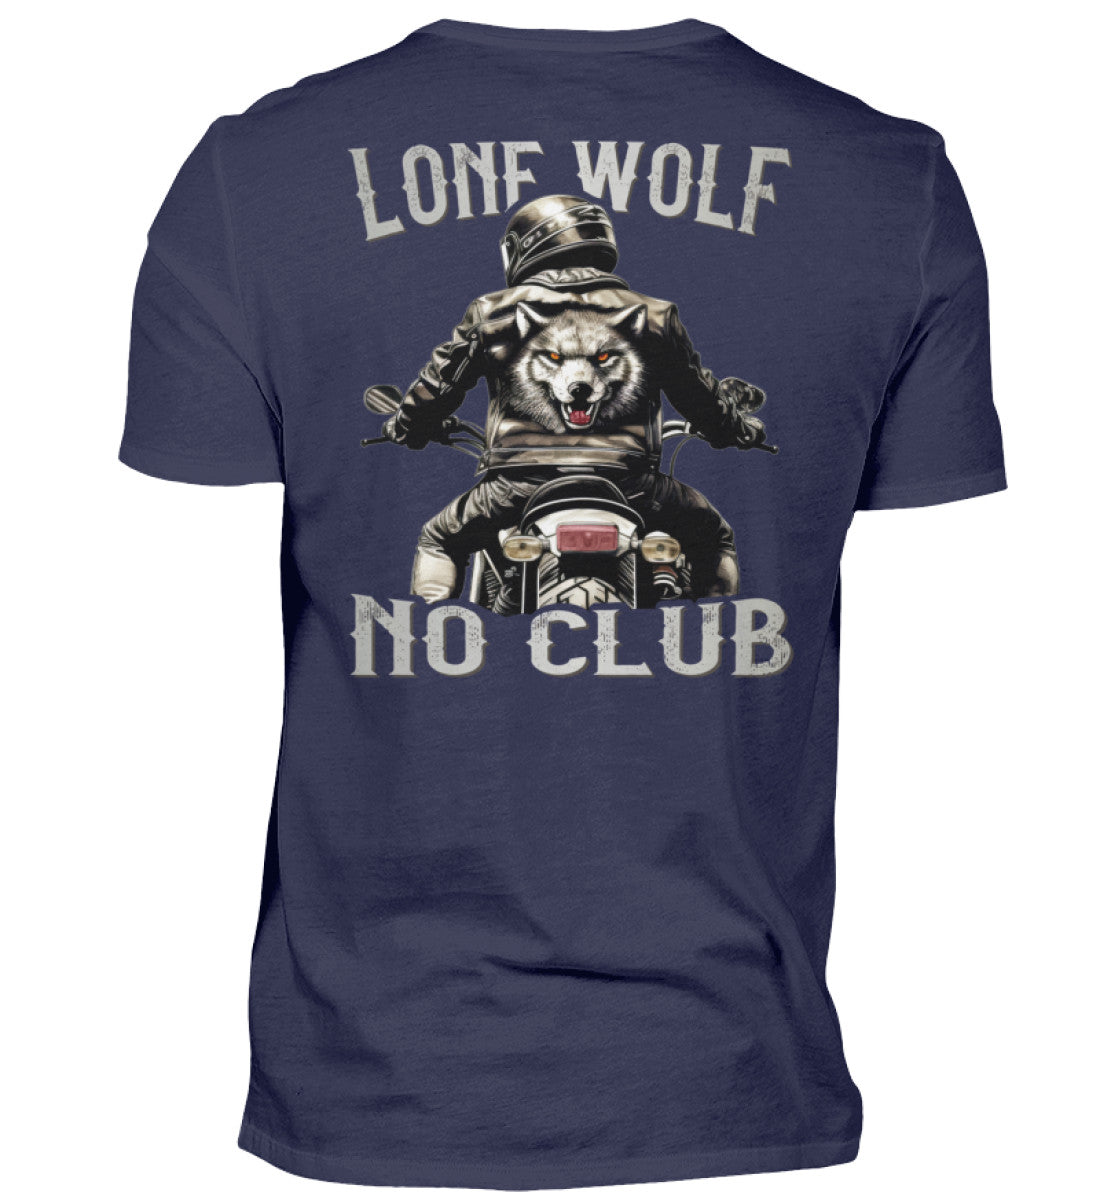 Ein Biker T-Shirt für Motorradfahrer von Wingbikers mit dem Aufdruck, Lone Wolf - No Club, als Back Print, in navy blau.